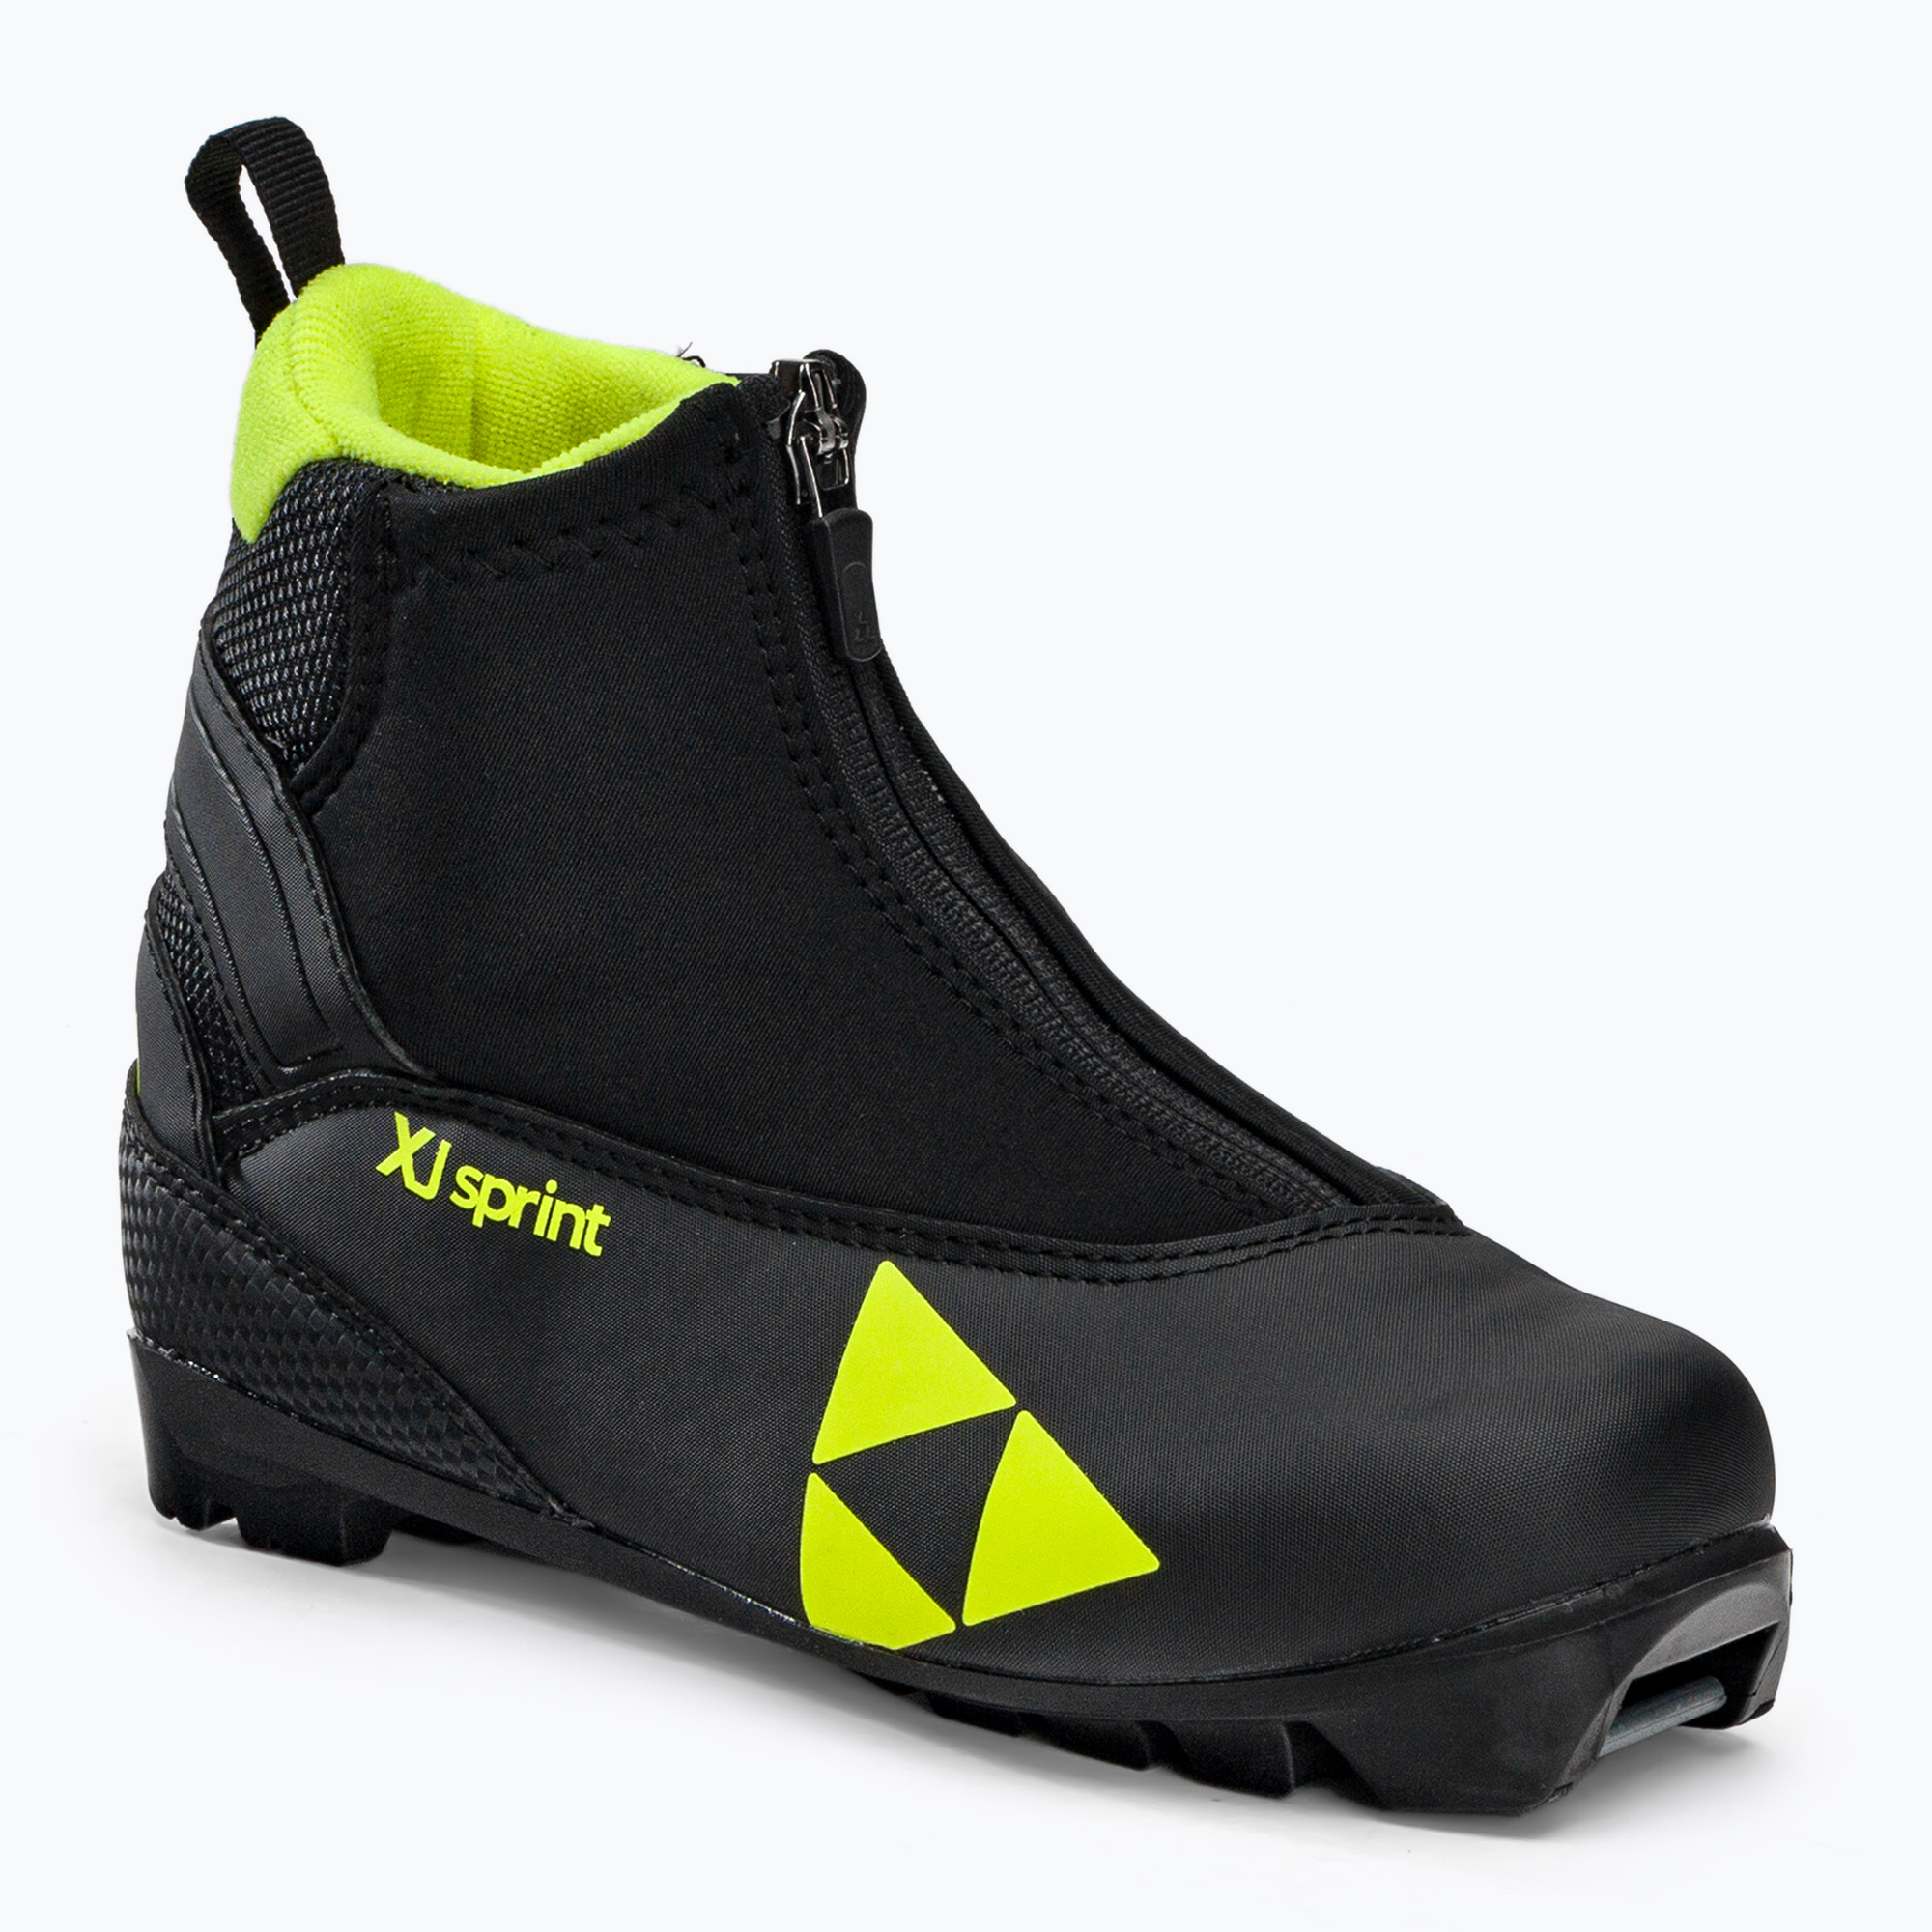 Detské topánky na bežecké lyžovanie Fischer XJ Sprint čierno-žlté S4821,31